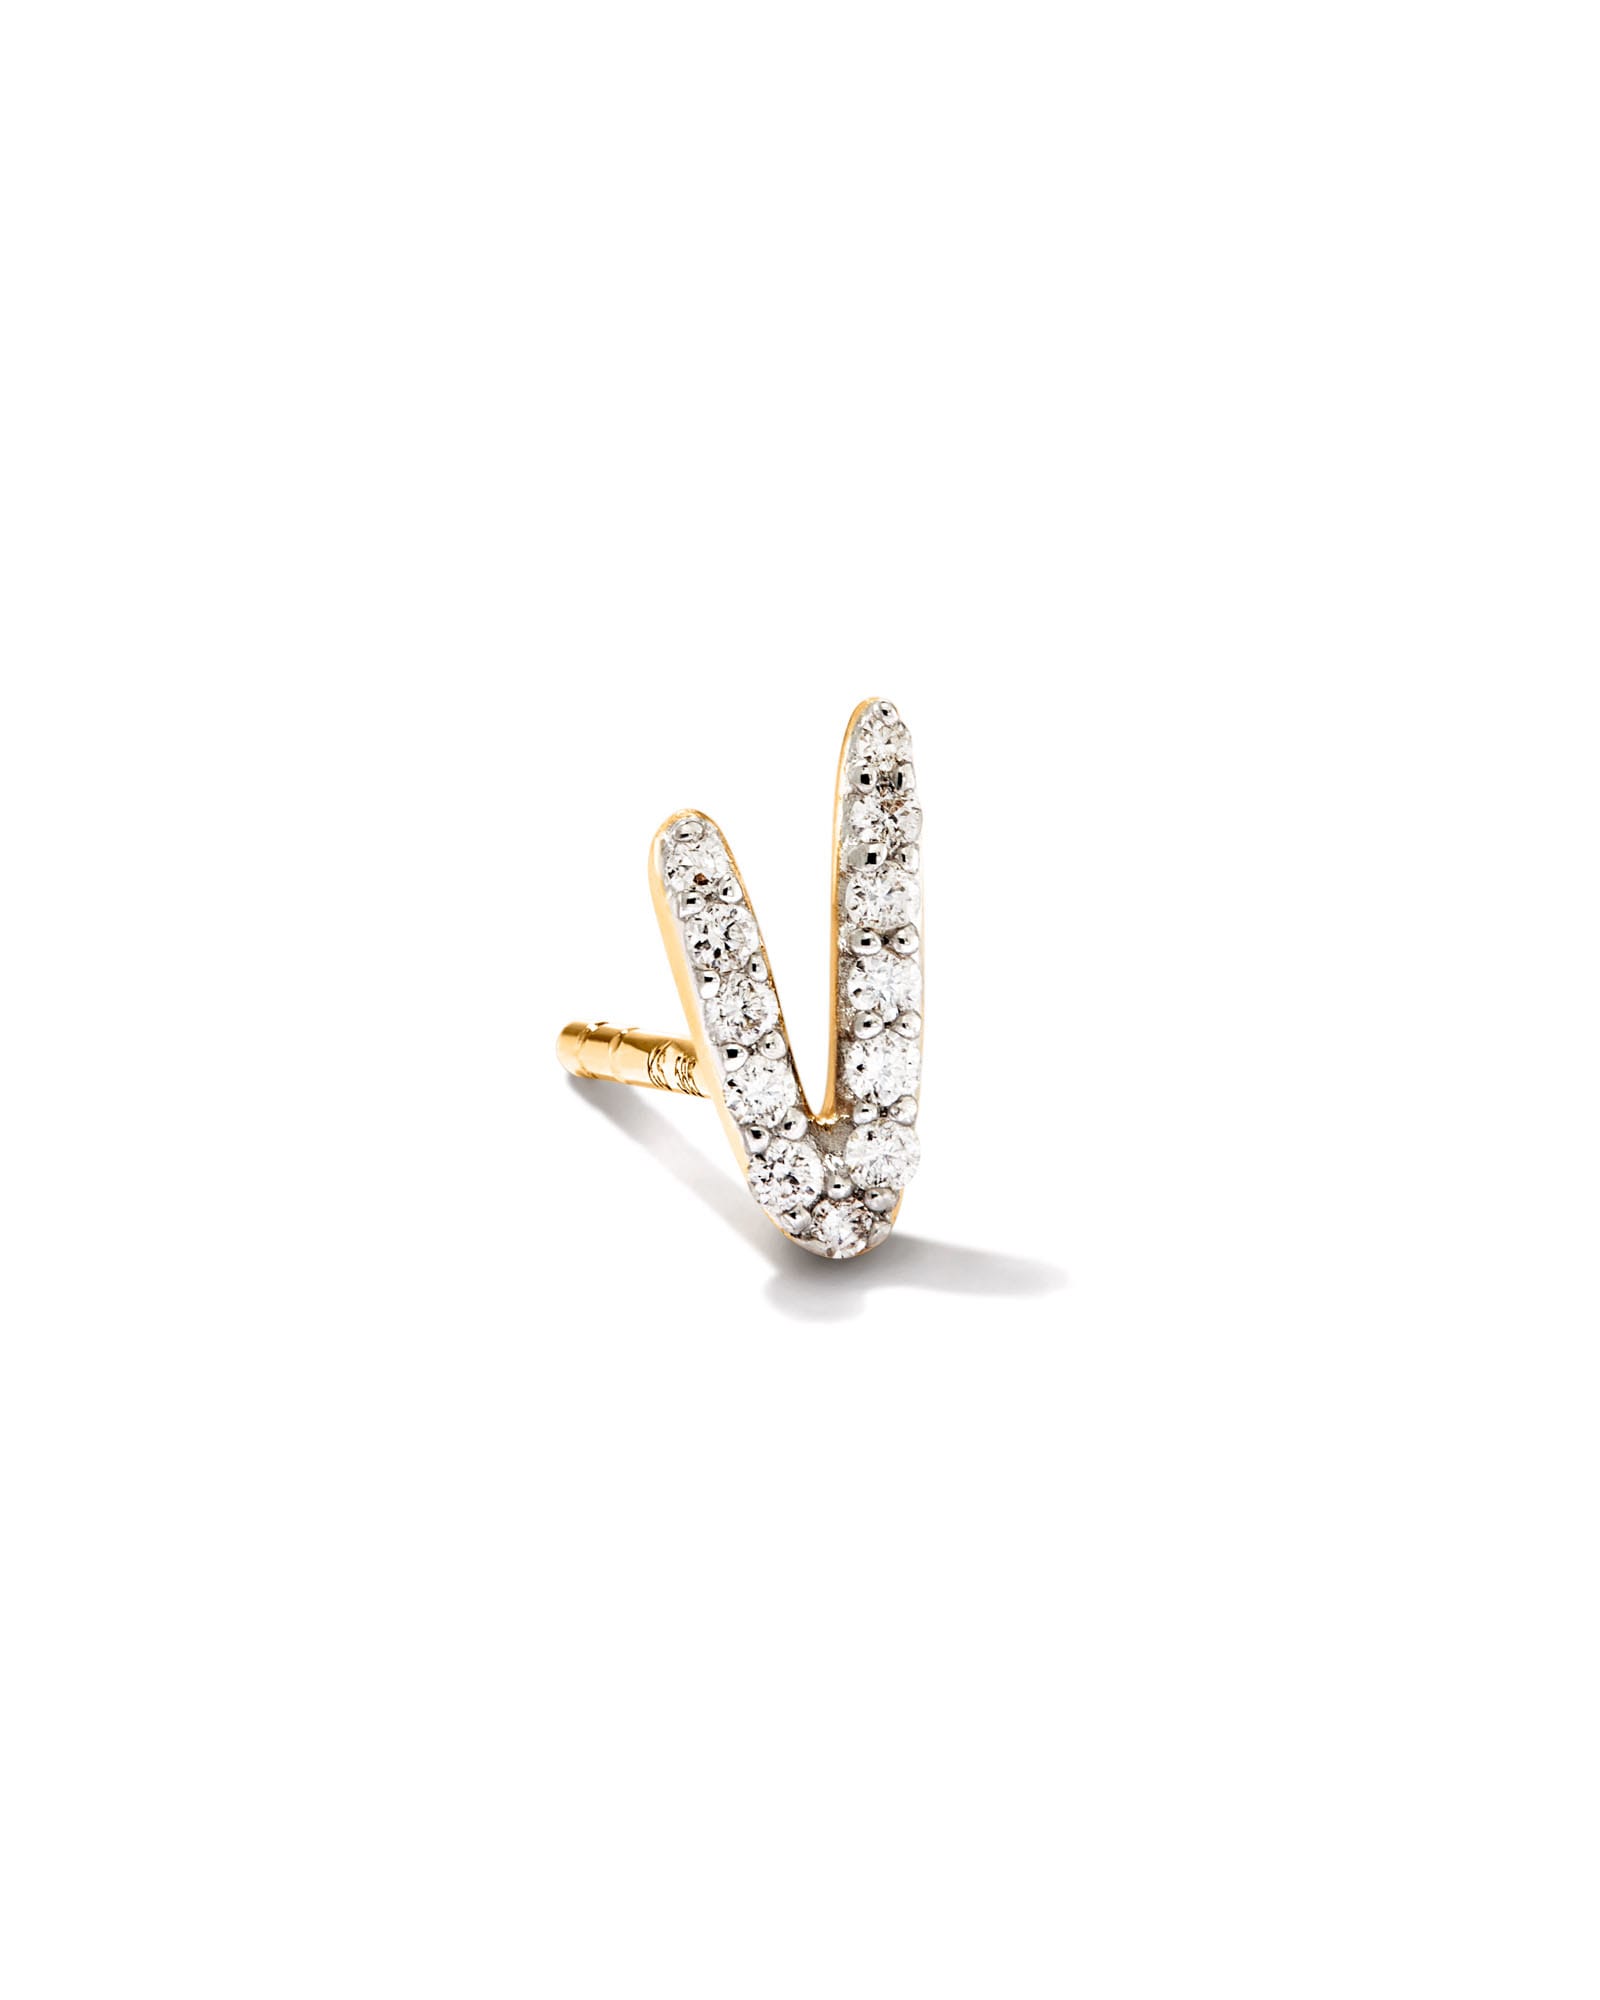 Kendra Scott Letter V 14k Yellow Gold Single Stud Earring in White Diamond | Diamonds